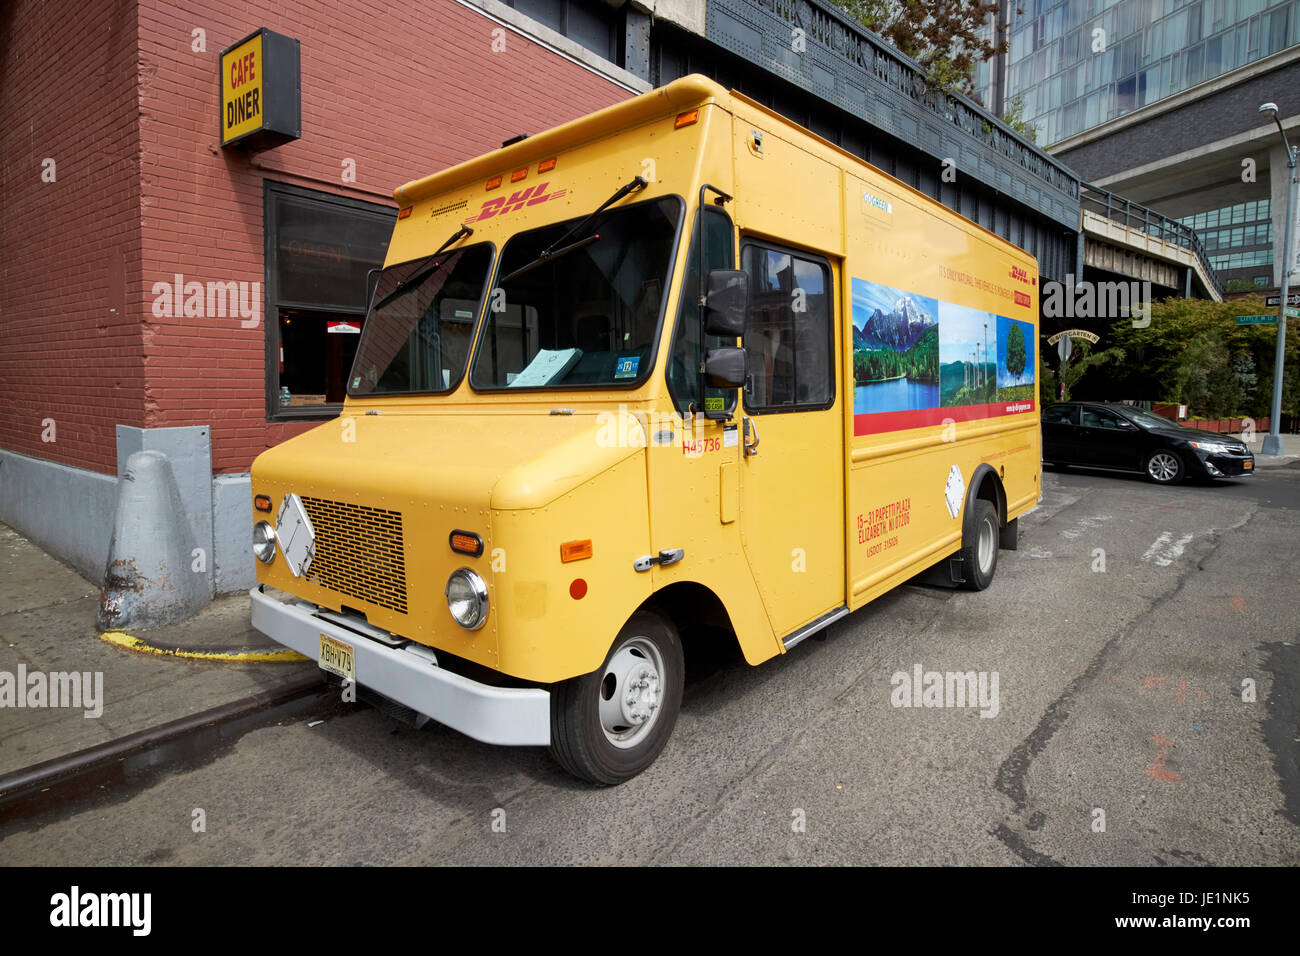 Livraison dhl pain électrique hybride van camion New York USA Banque D'Images